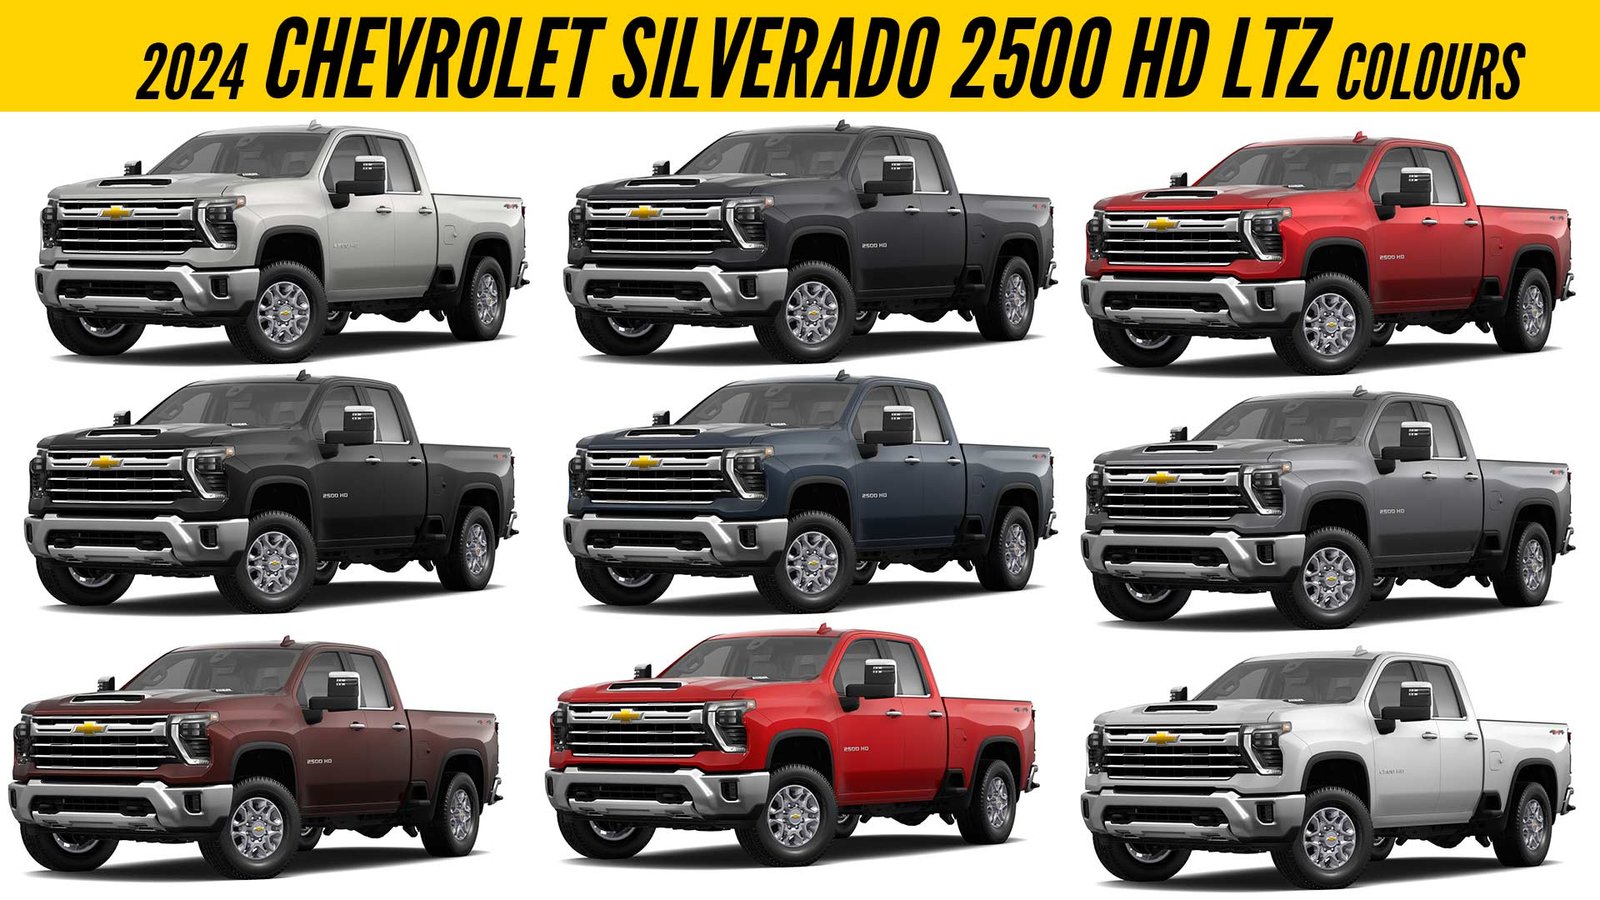 2024 Chevrolet Silverado 2500 HD LTZ All Color Options Images AUTOBICS